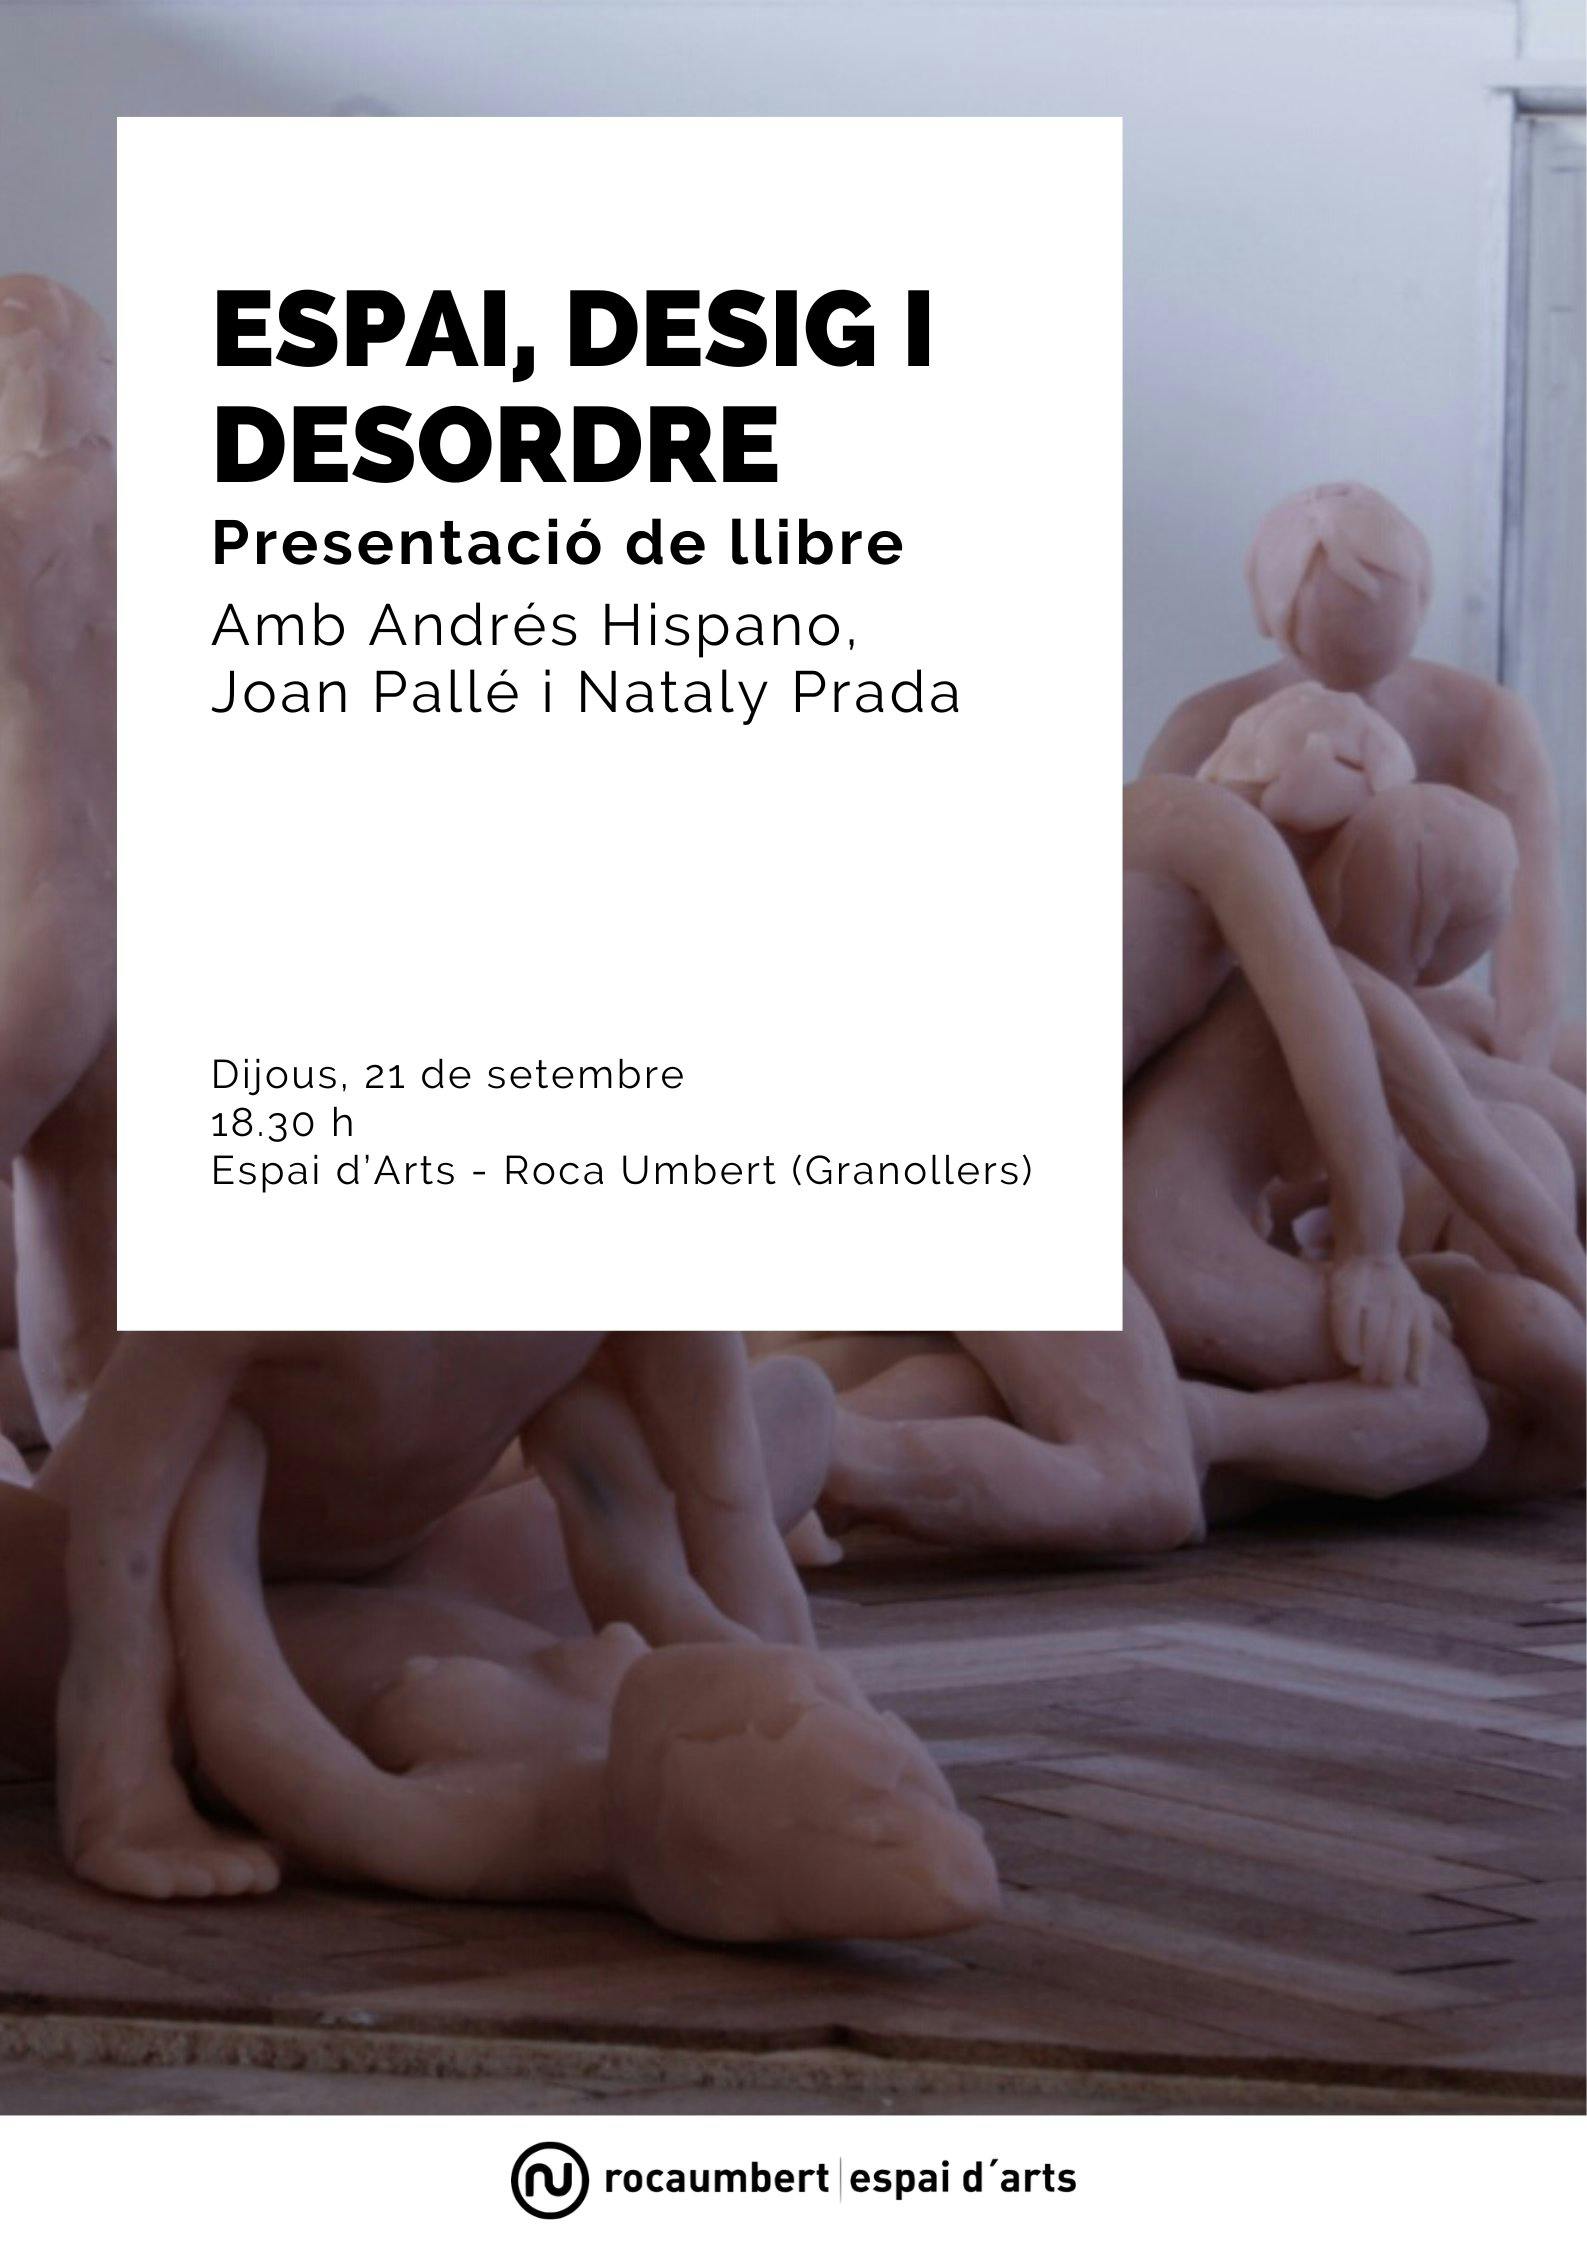 Presentació de llibre: "Espai, Desig i Desordre" amb Andrés Hispano, Joan Pallé i Nataly Prada